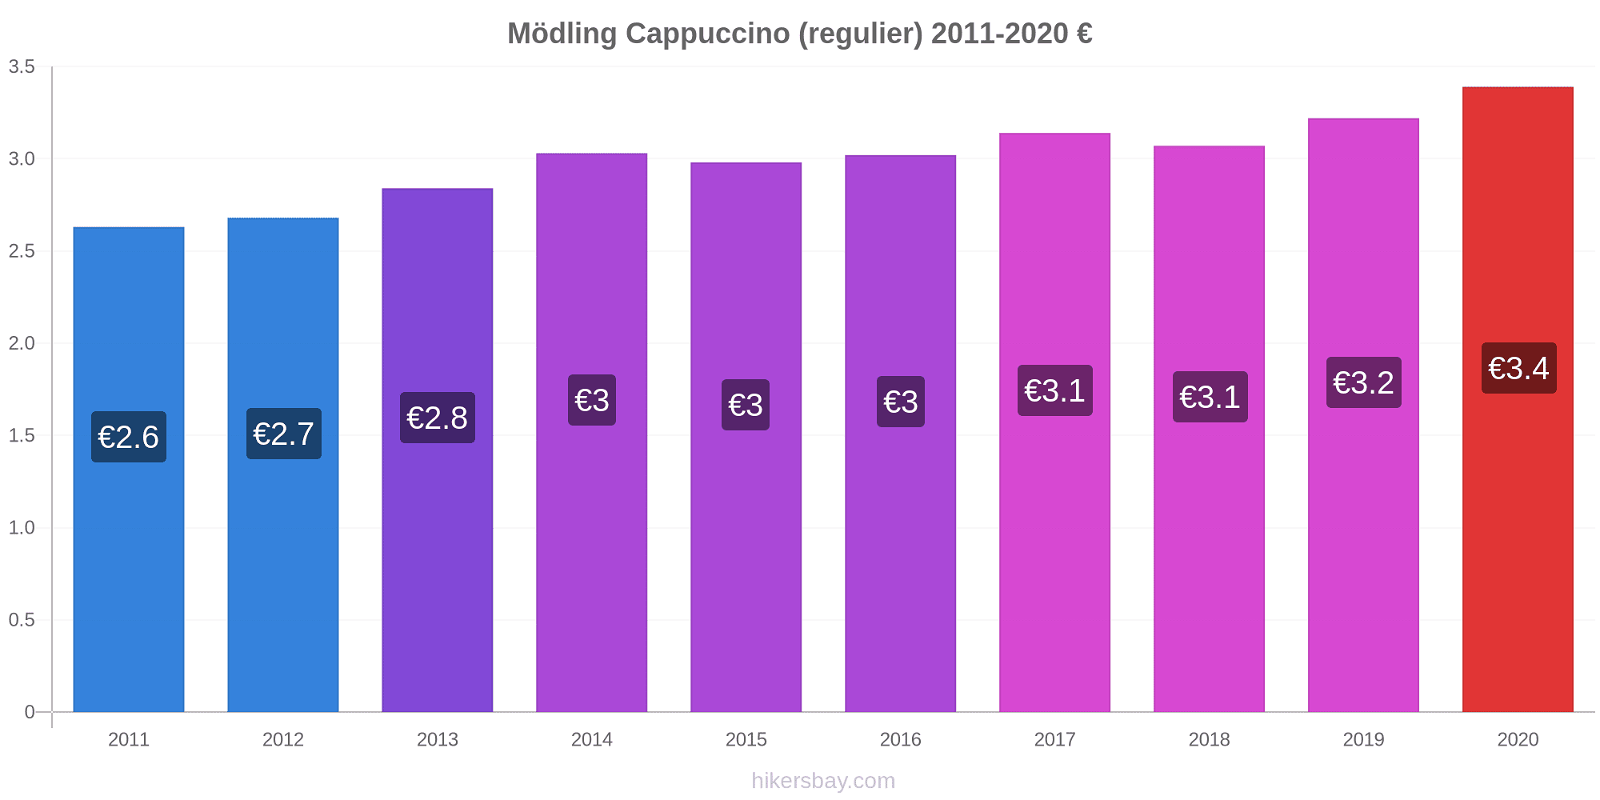 Mödling prijswijzigingen Cappuccino (regelmatige) hikersbay.com